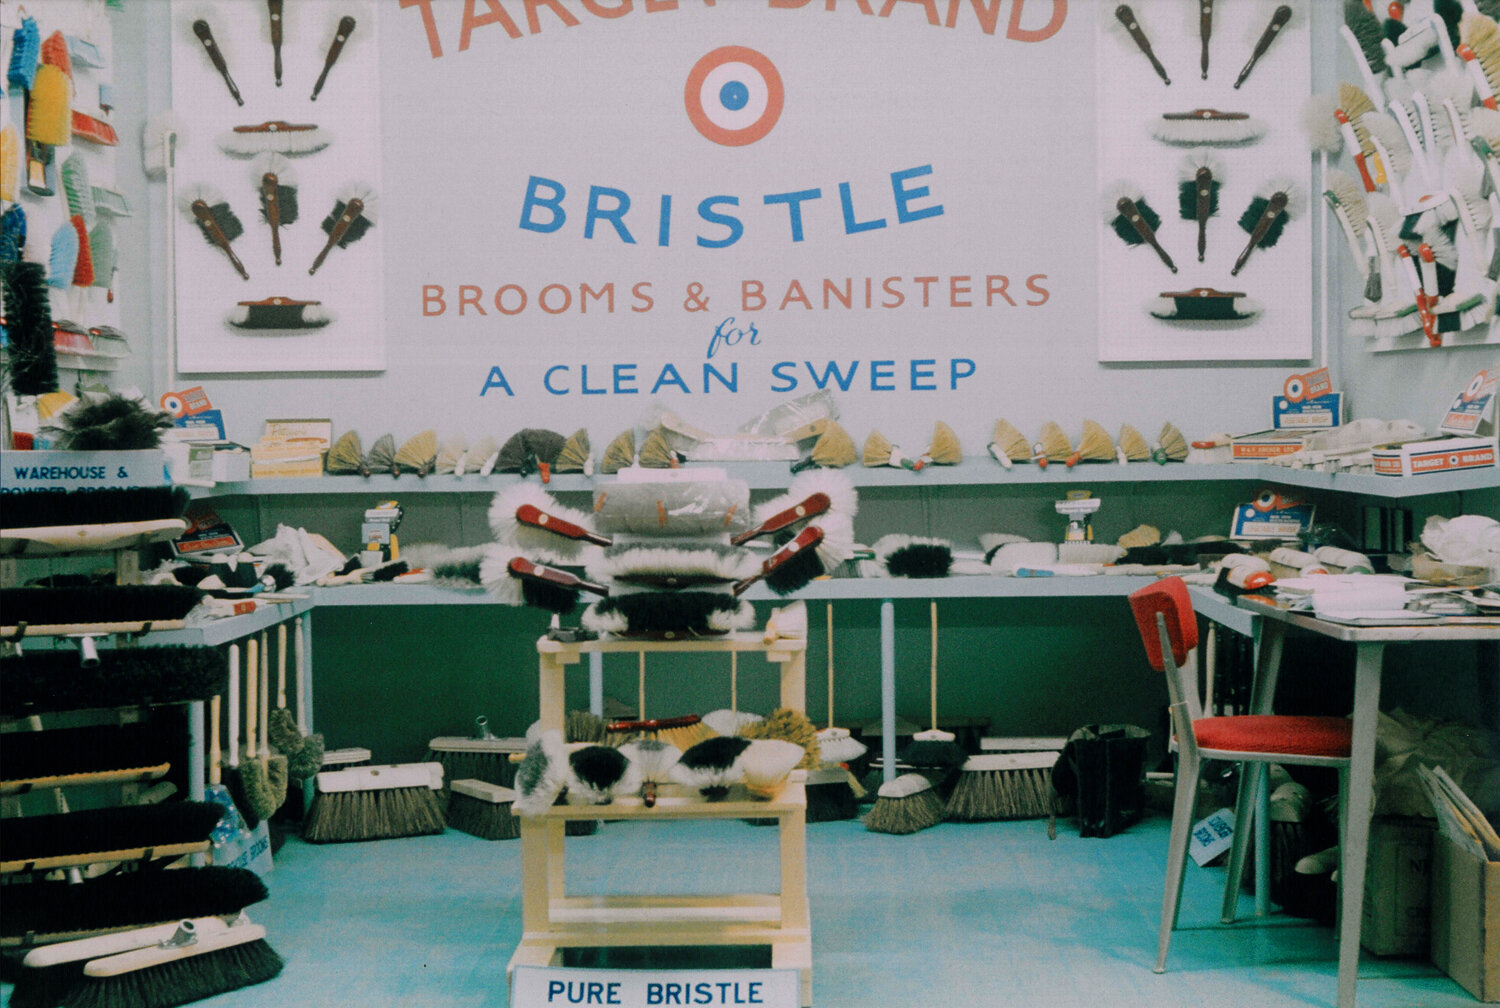 Target Brand Bristle - Shop Display.jpg